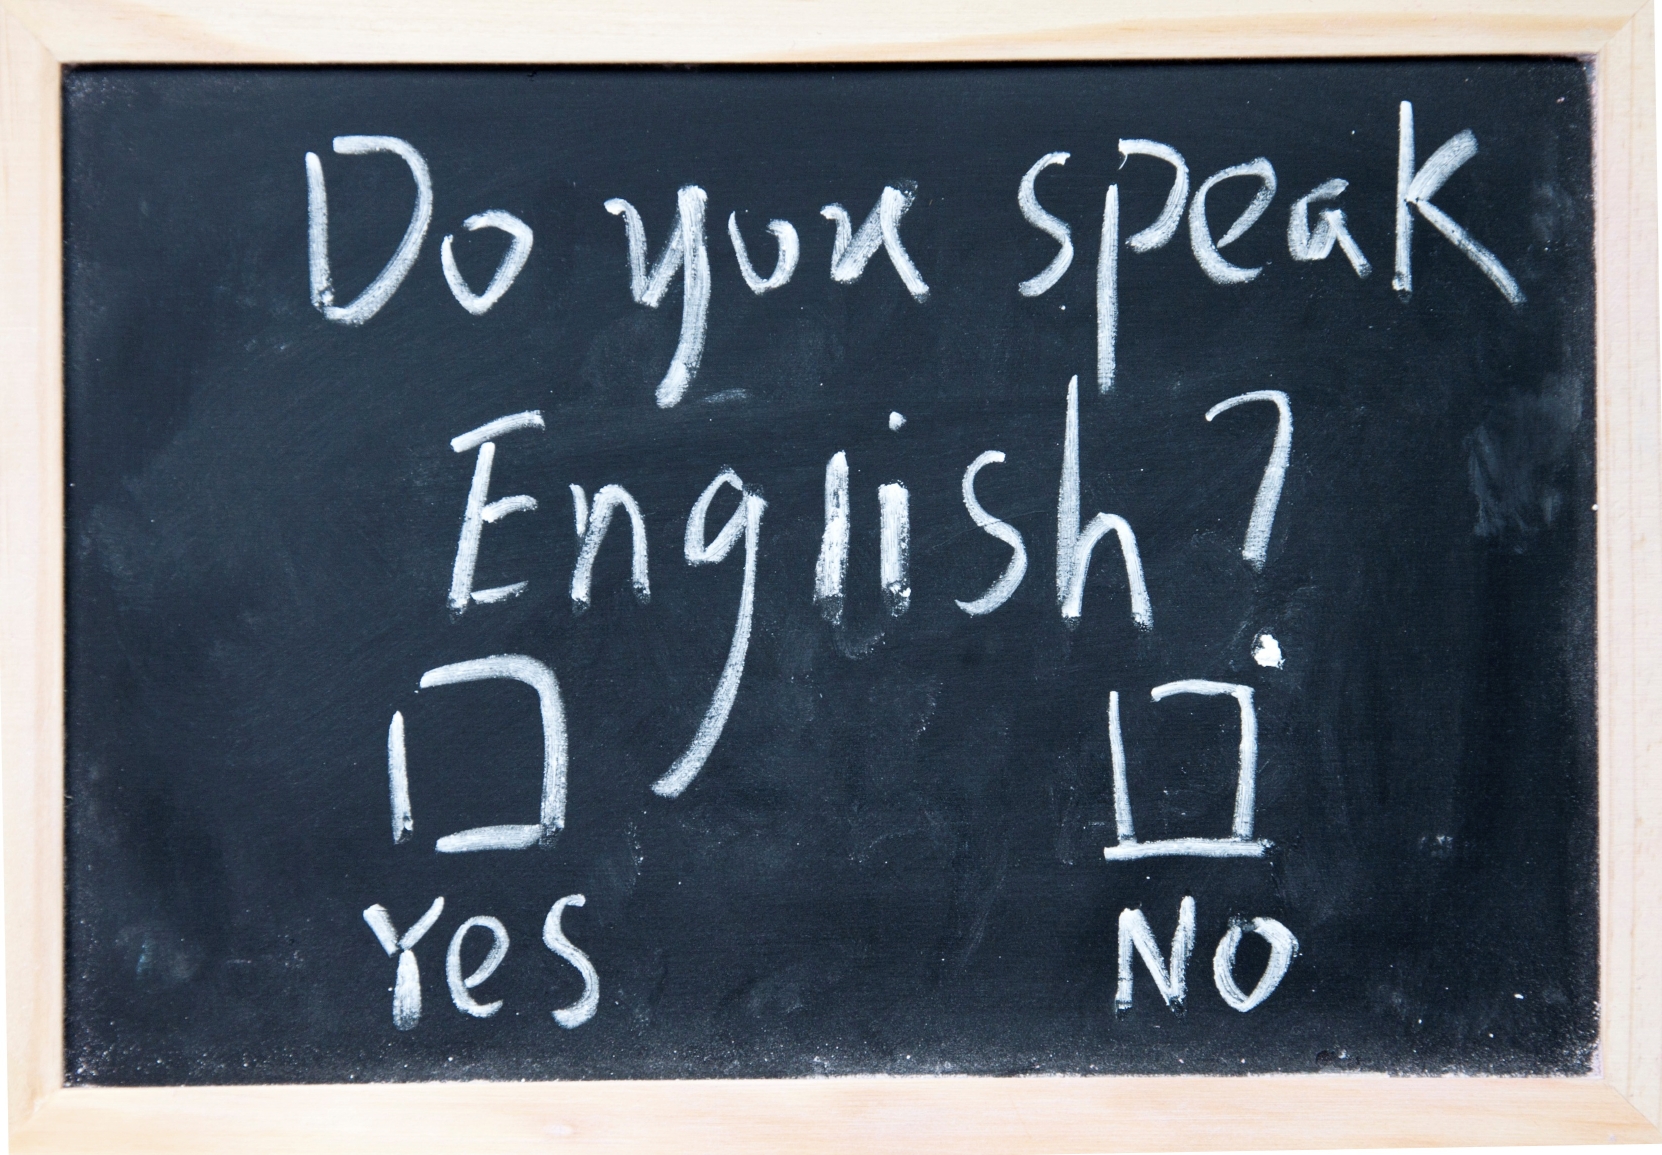 Do you speak english test